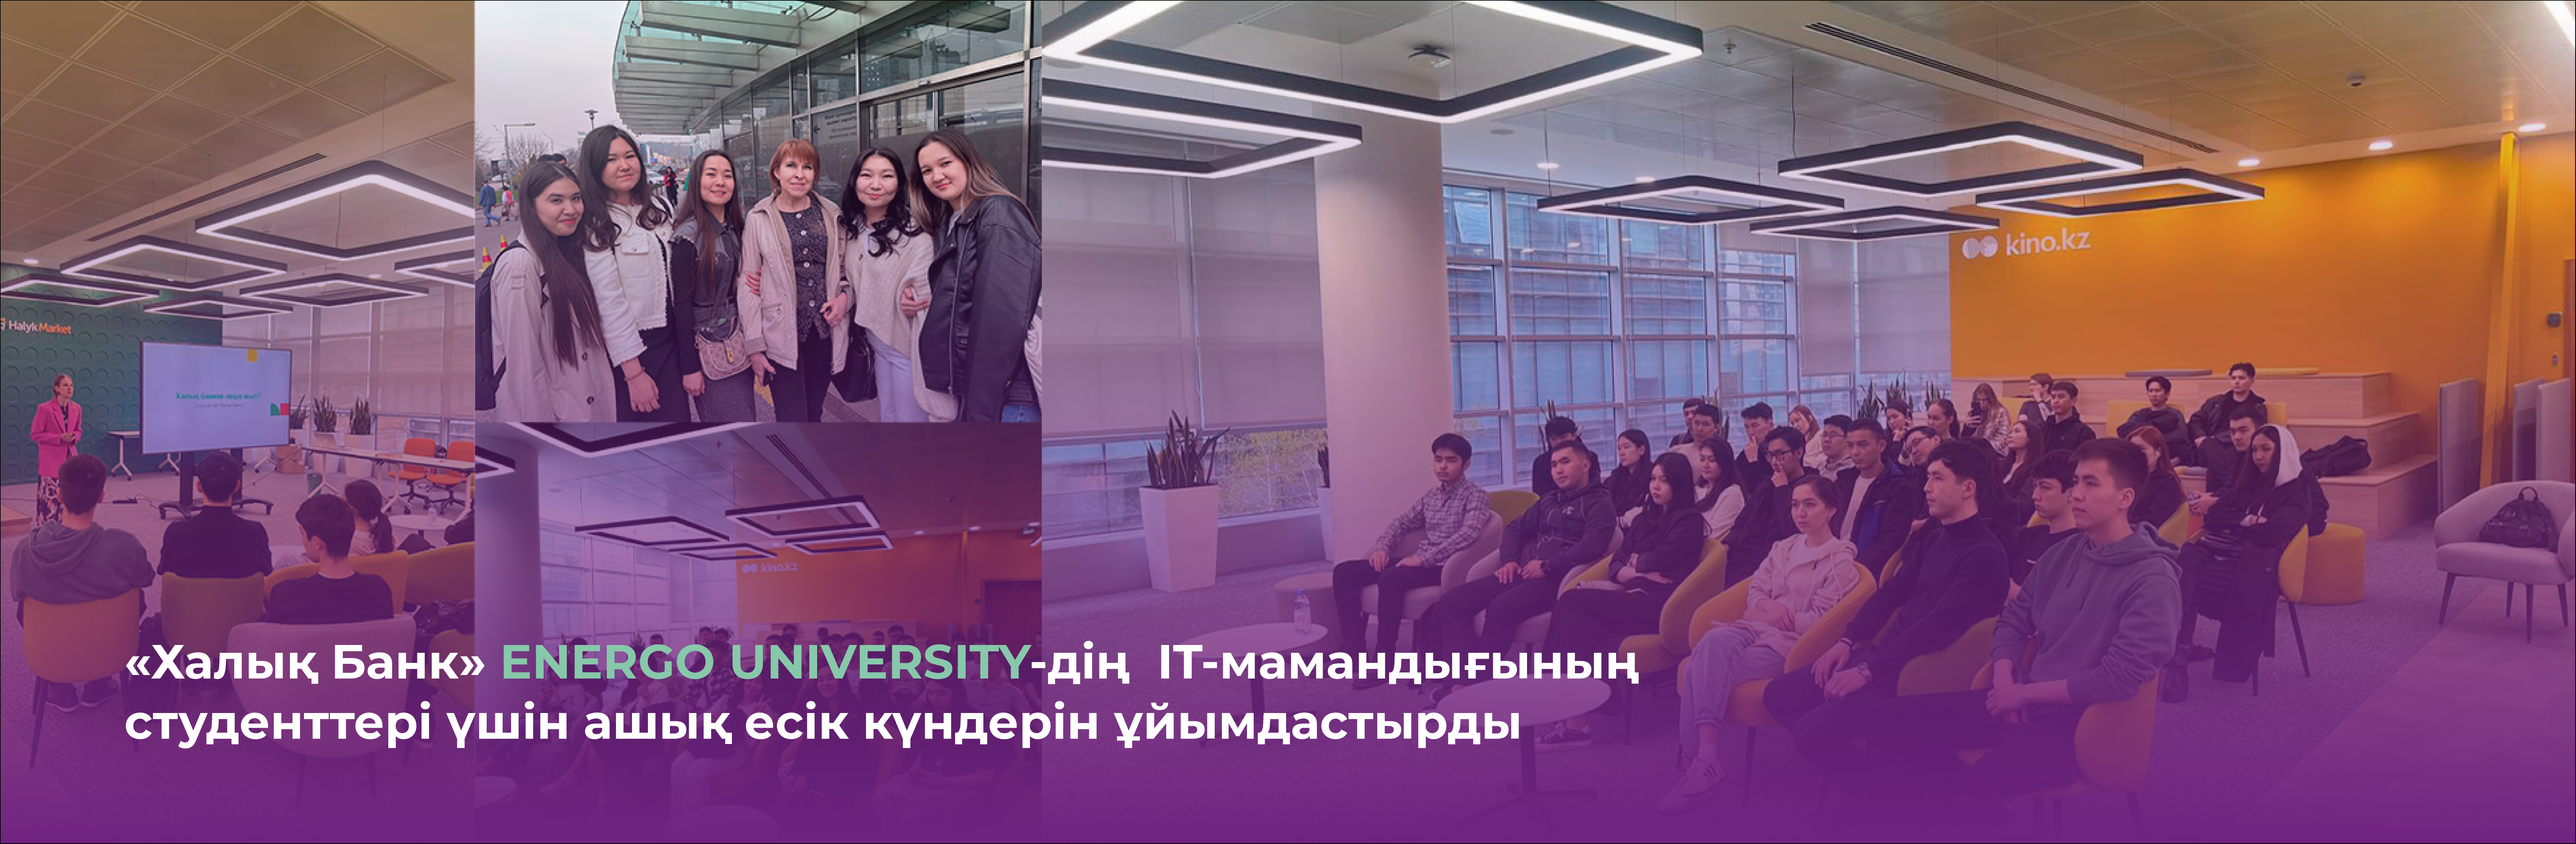 «Халык Банк» организовал дни открытых дверей для студентов IT-специальностей ENERGO UNIVERSITY